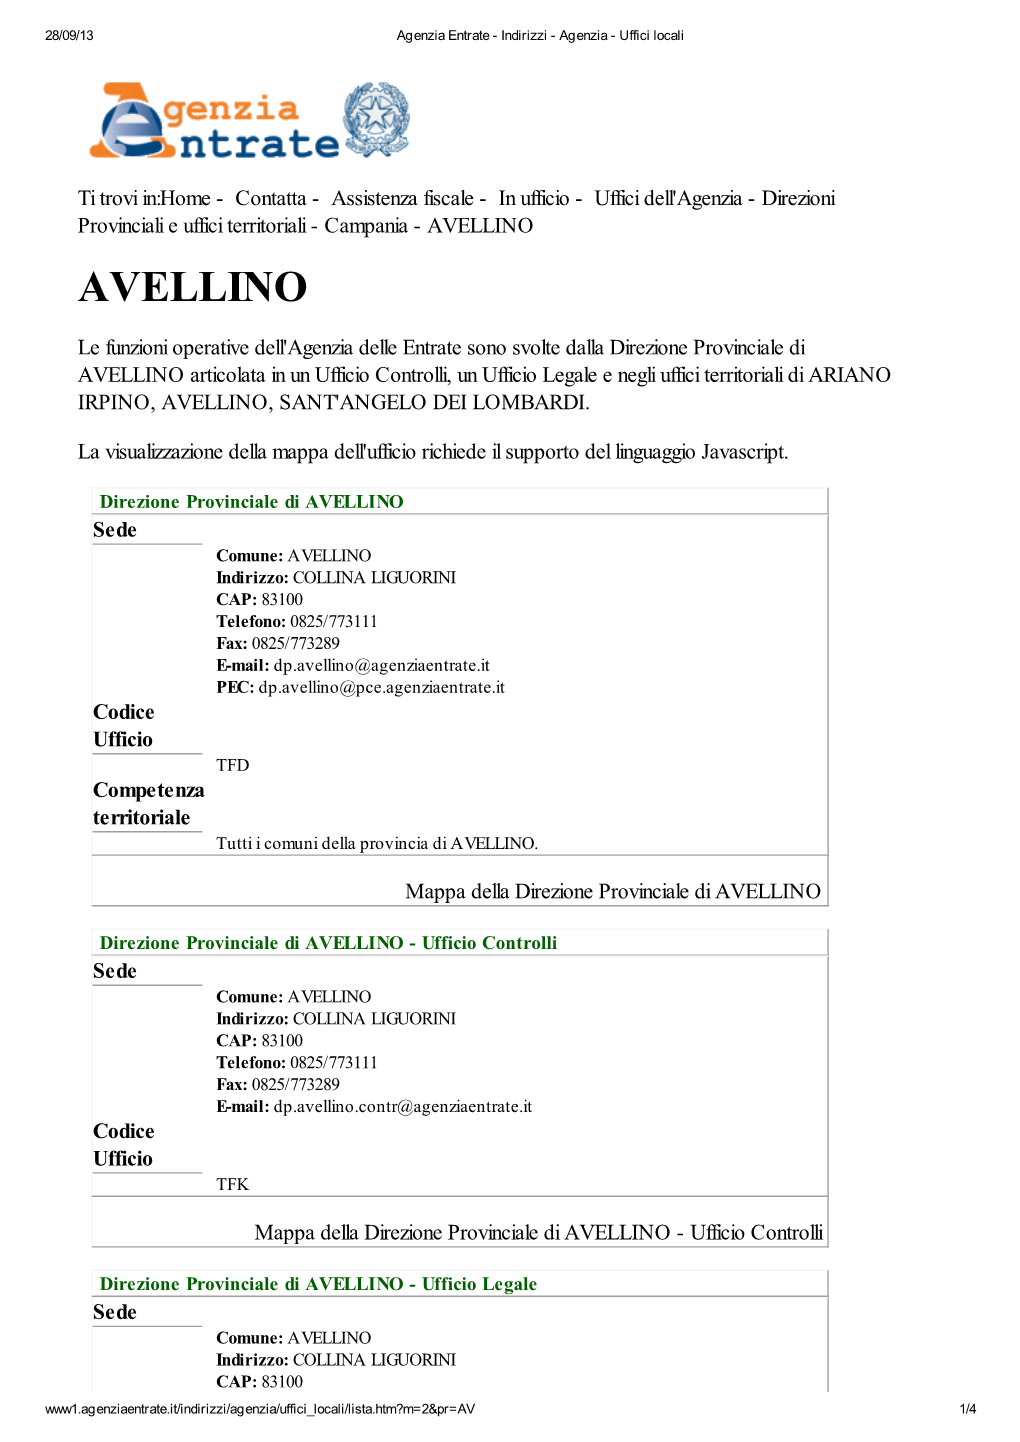 Codici Uffici Agenzia Delle Entrate Della Provincia Di Avellino